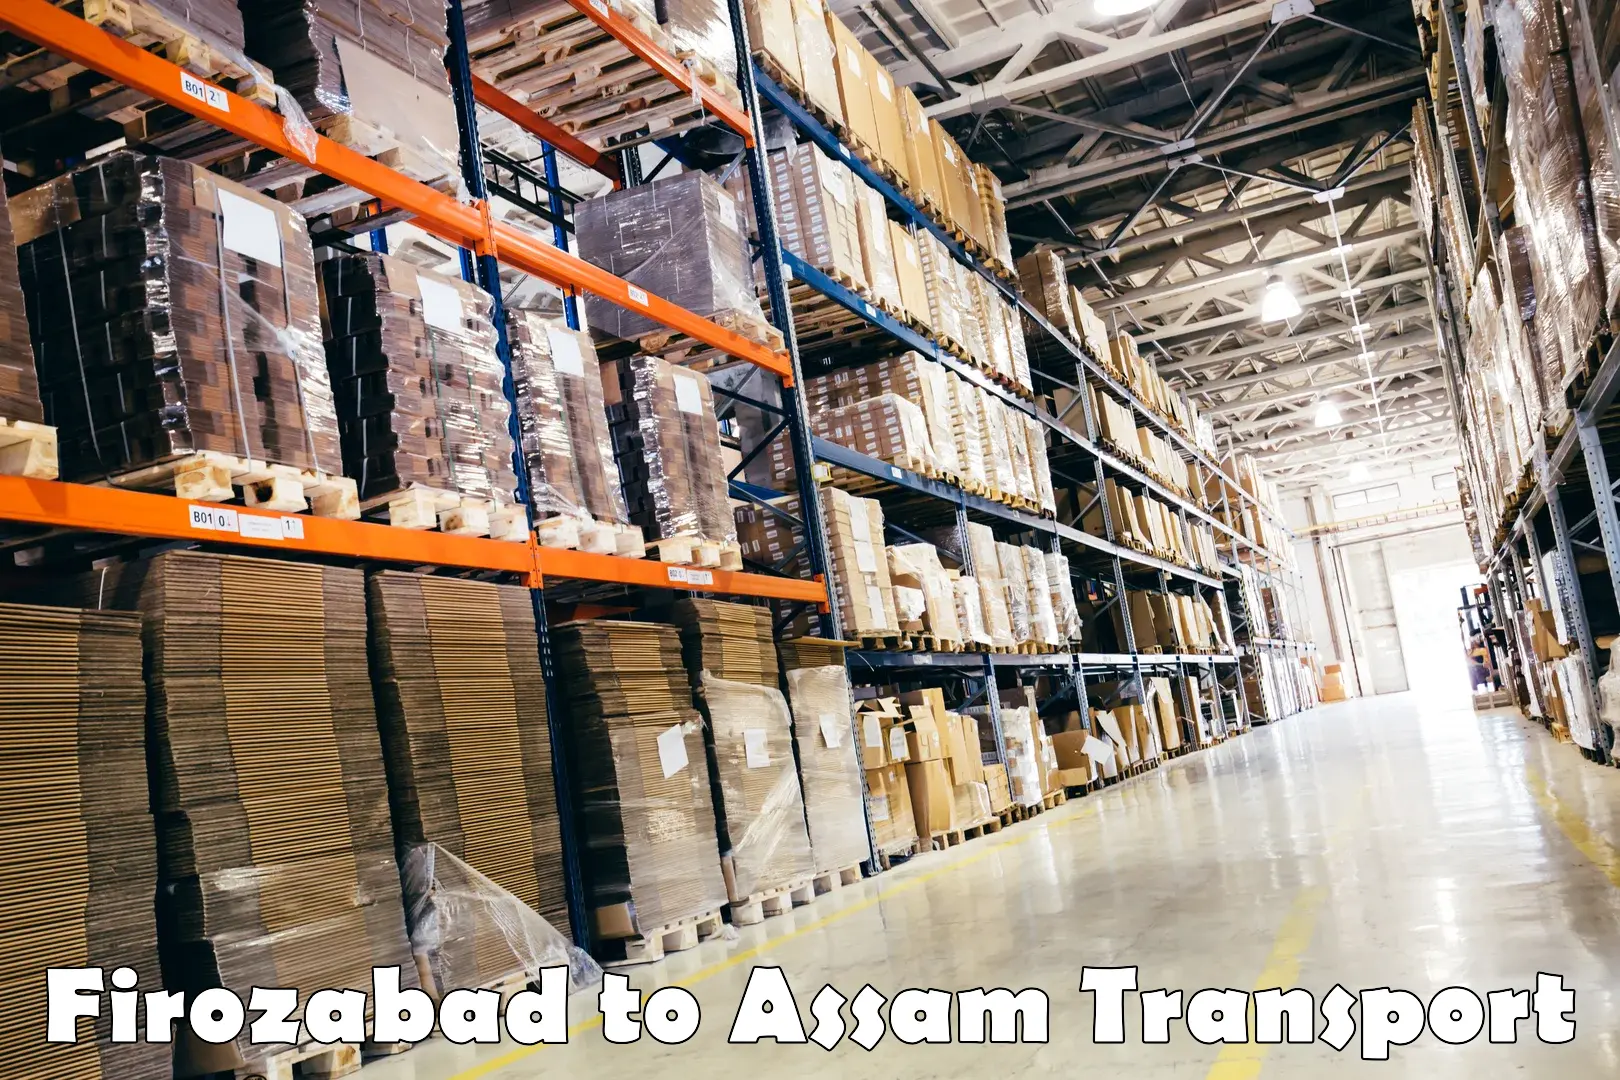 Cargo train transport services Firozabad to Assam